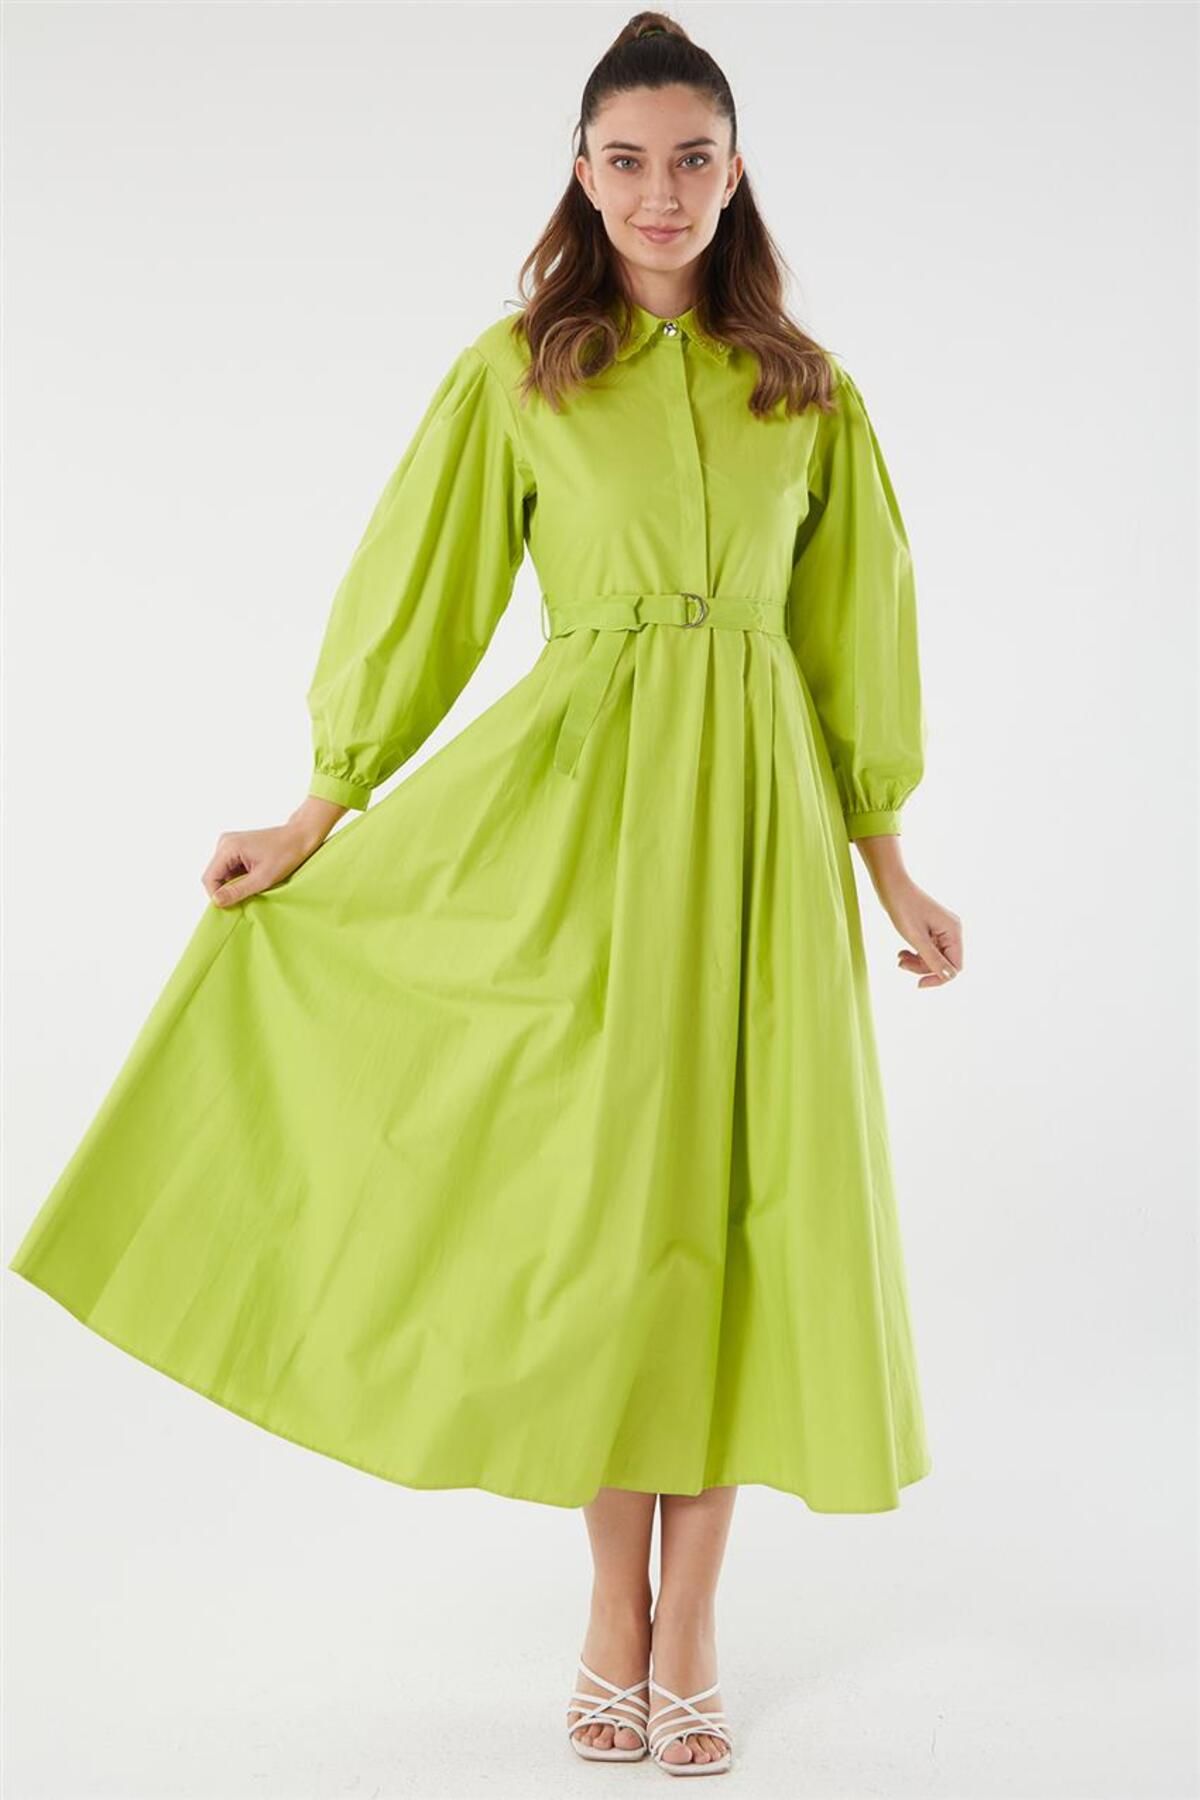 Kayra Balon Kol Fıstık Yeşili Elbise